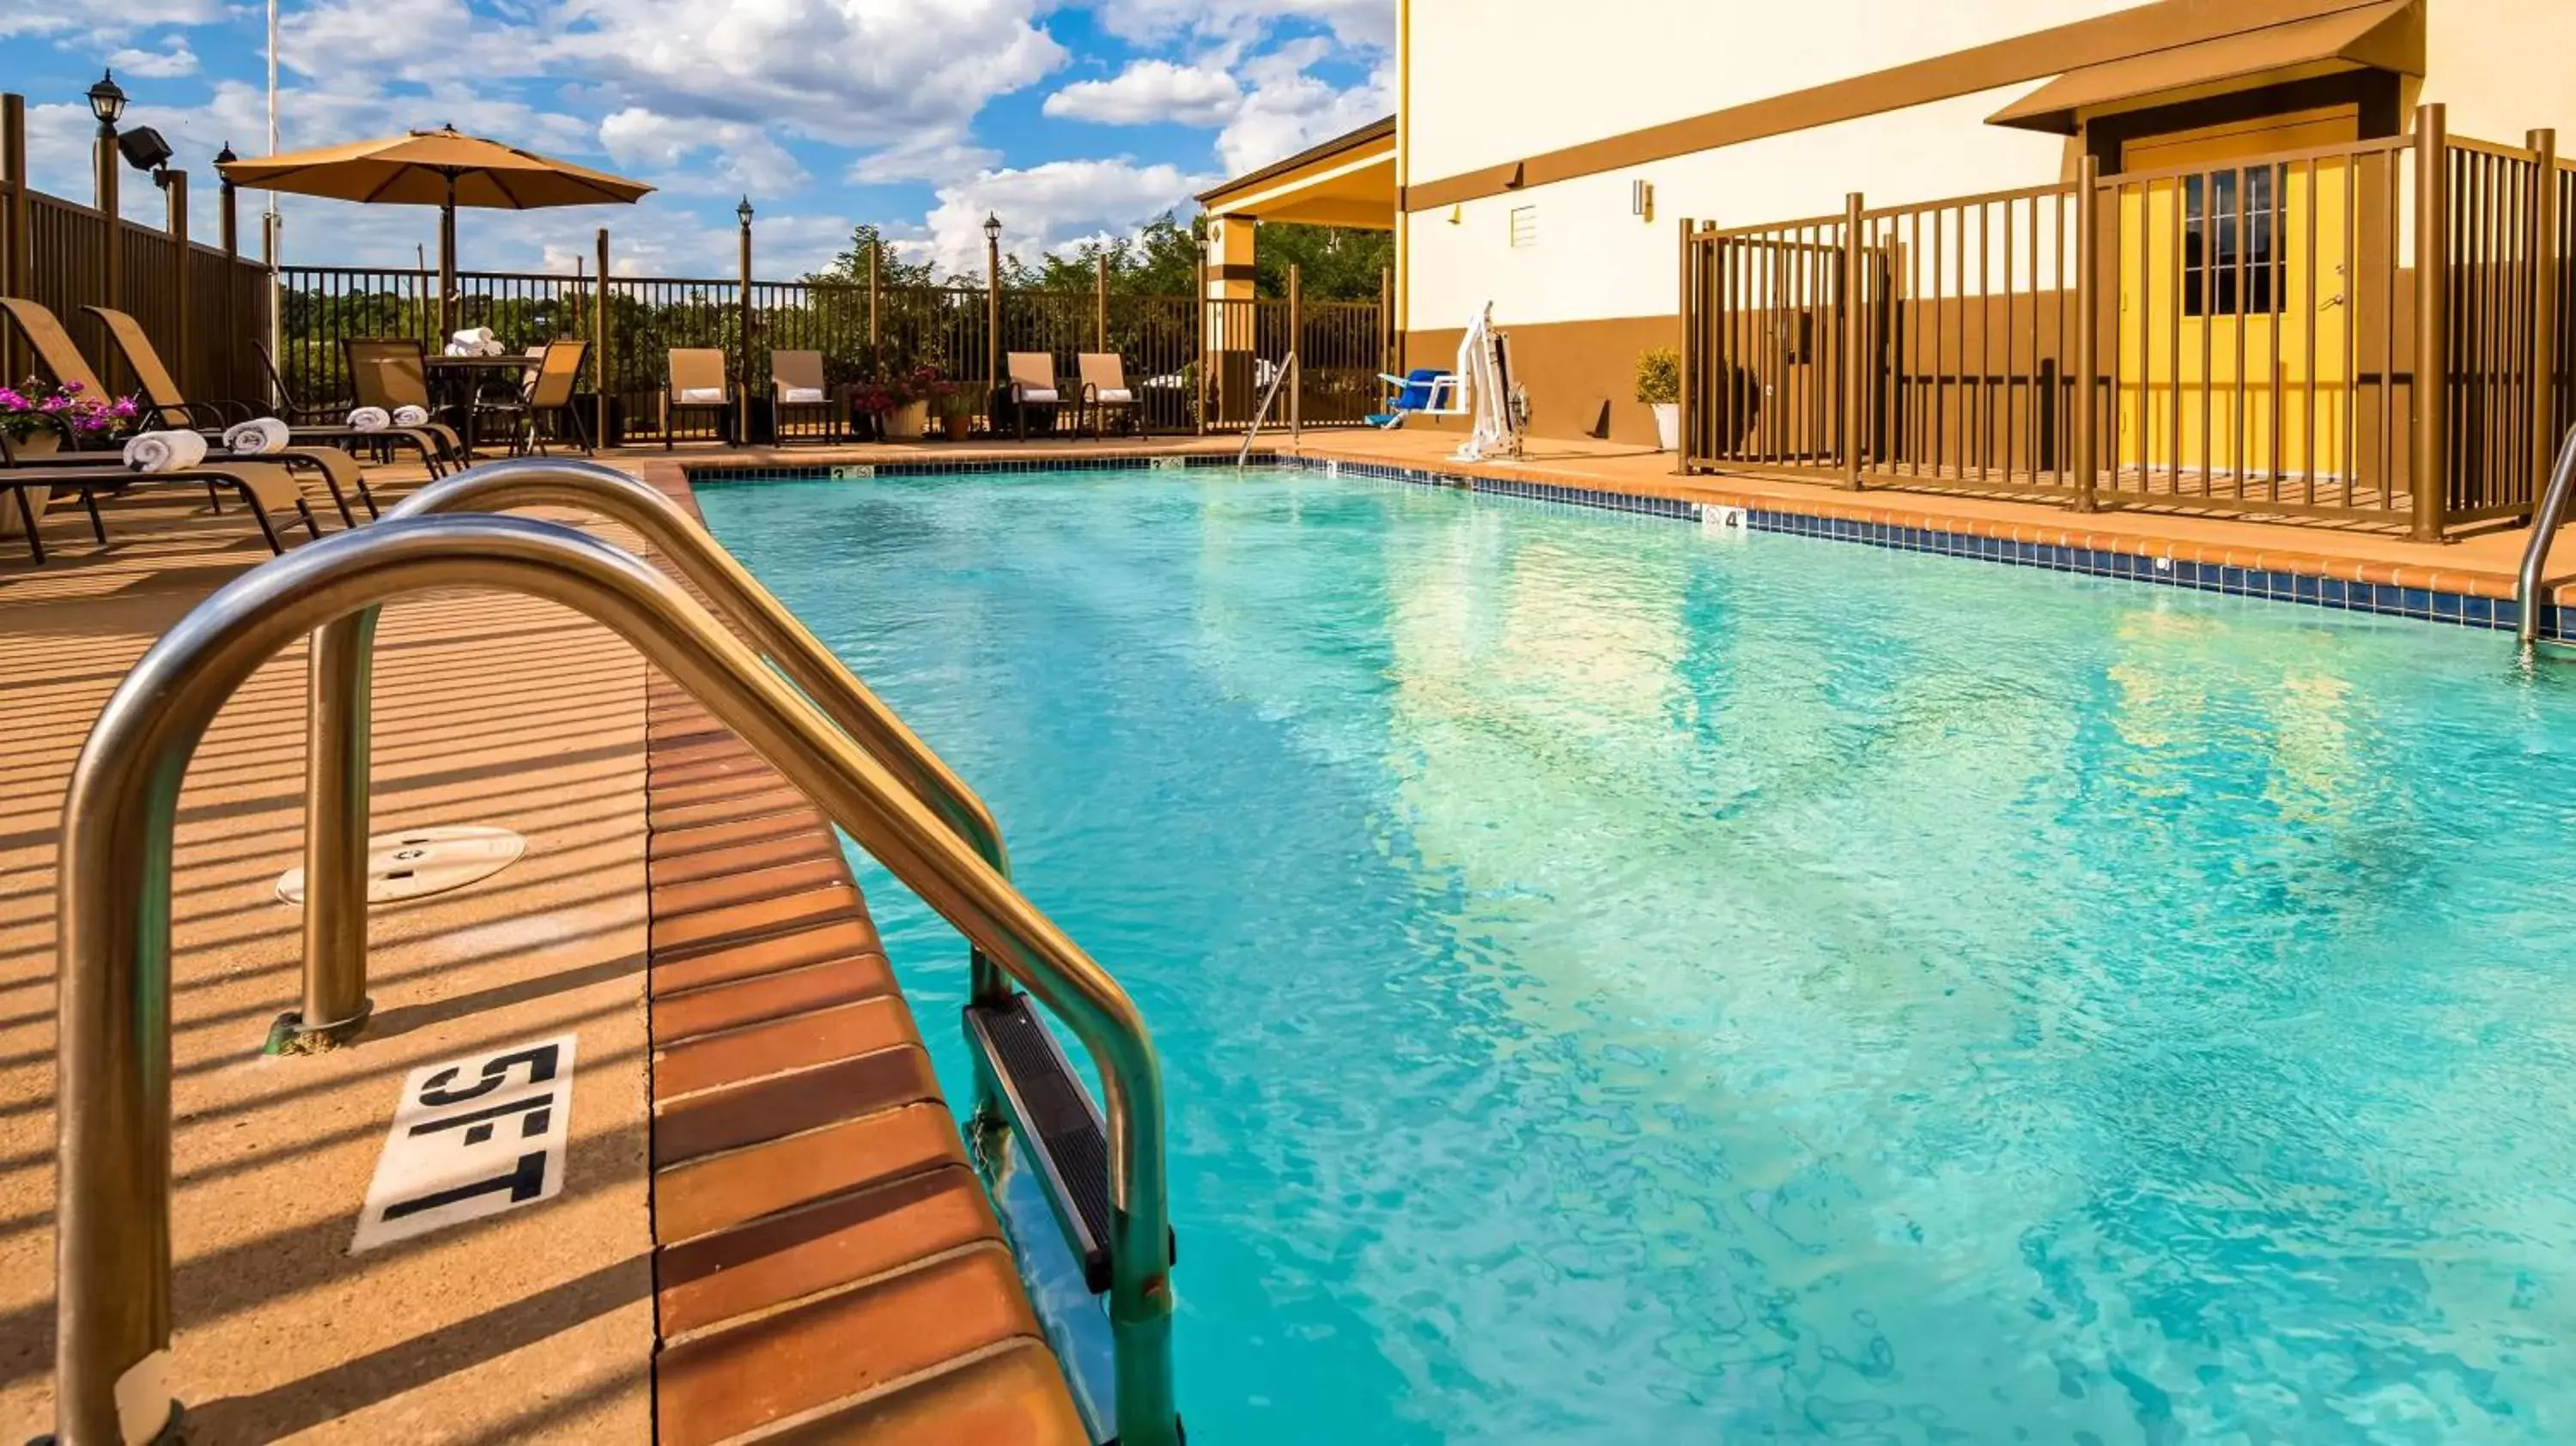 On site, Swimming Pool in Best Western Pineywoods Inn